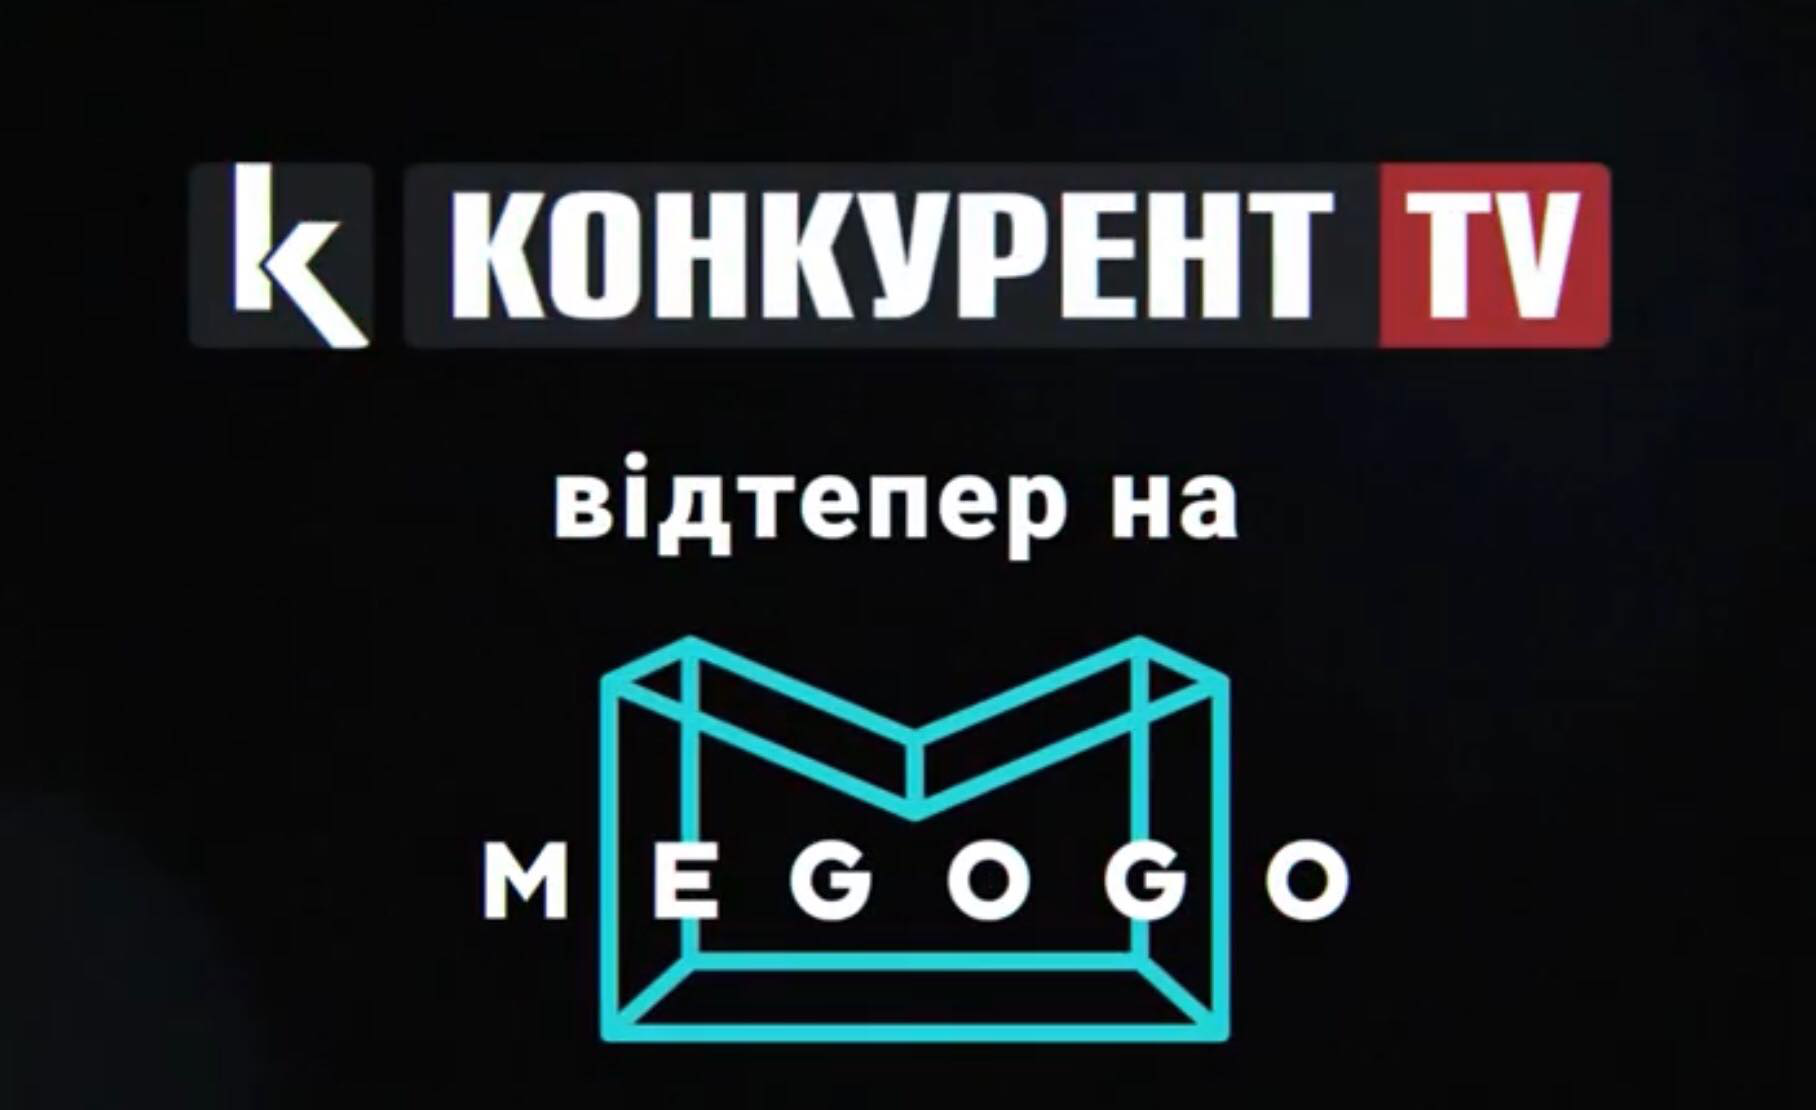 Конкурент TV: новий волинський телеканал відтепер на MEGOGO (відео)